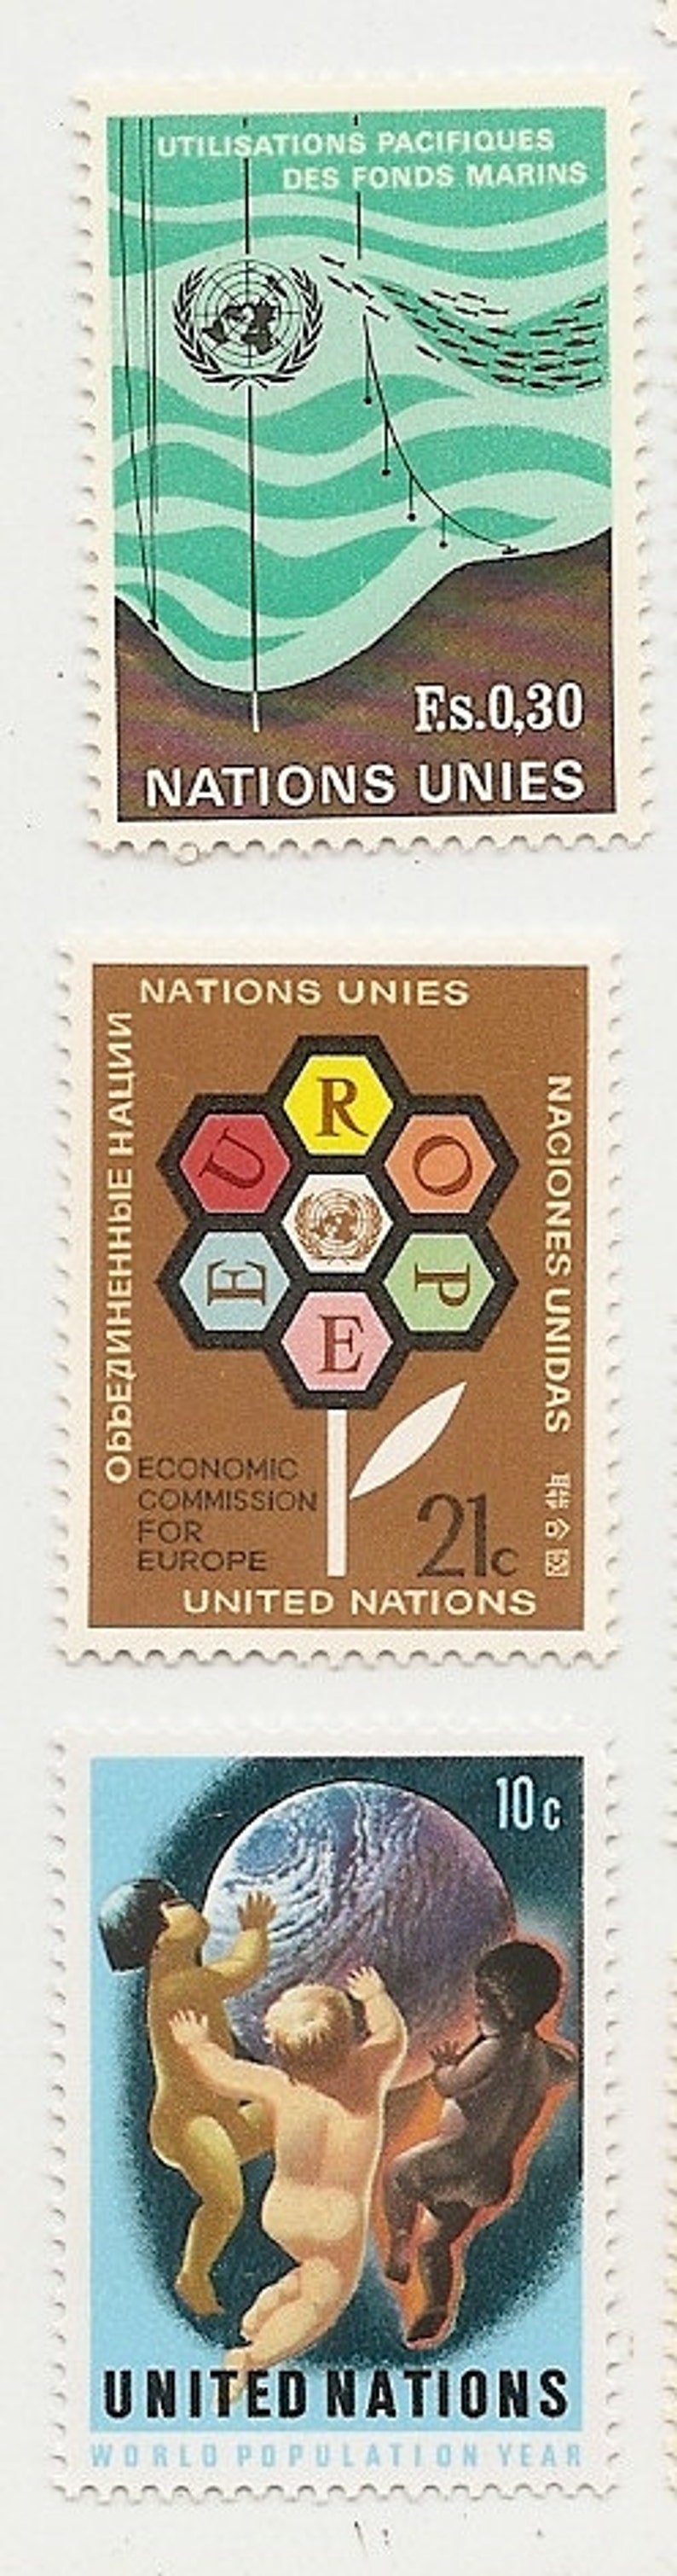 95 Vintage Unused UNITED NATIONS STAMPS image 5